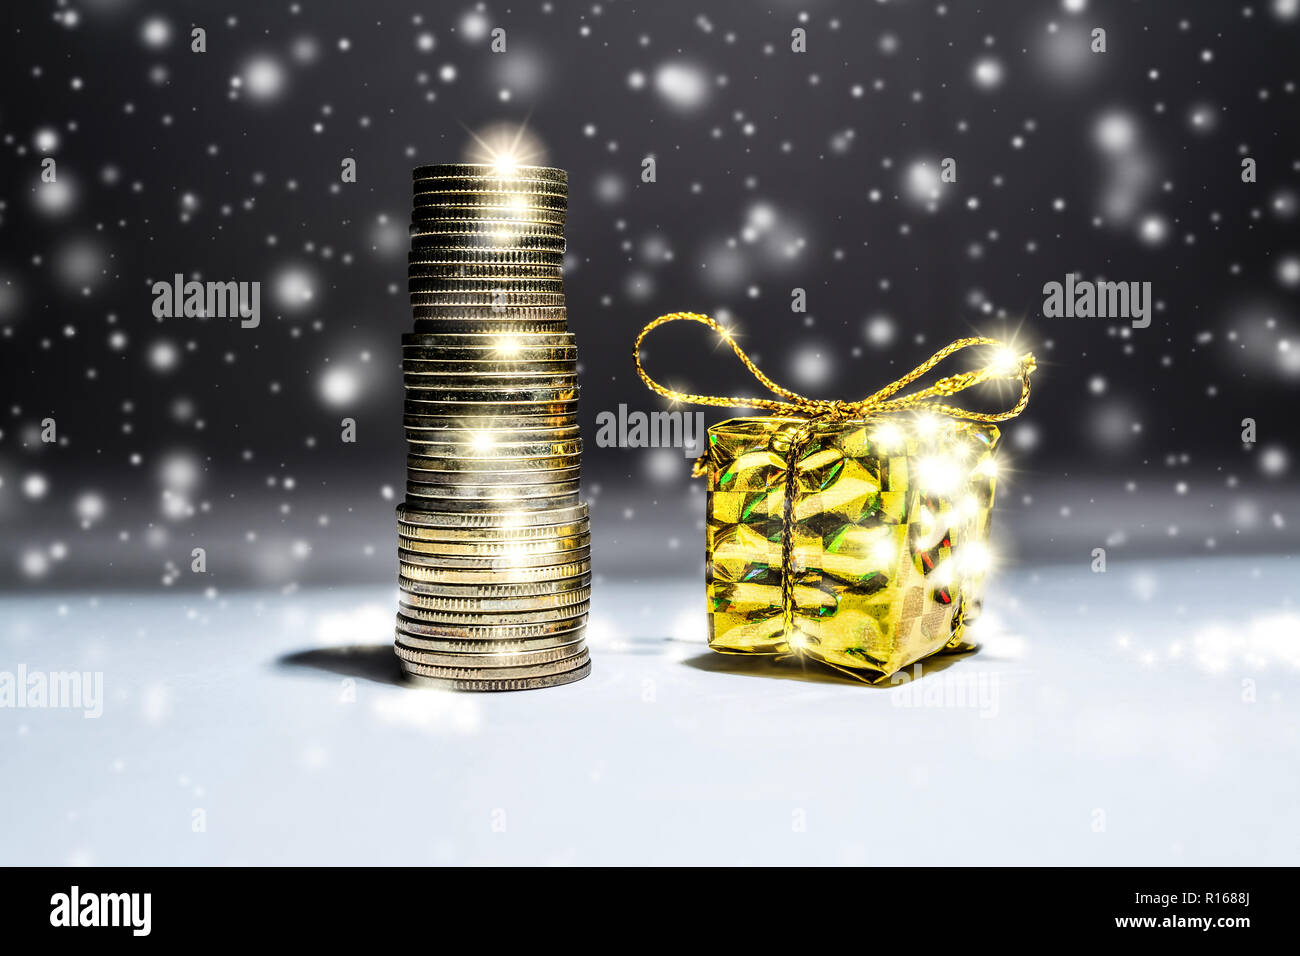 Das neue Jahr still-Leben mit einem Stapel von Goldmünzen und eine Box mit einem Geschenk auf einem dunklen Hintergrund mit fallendem Schnee Stockfoto